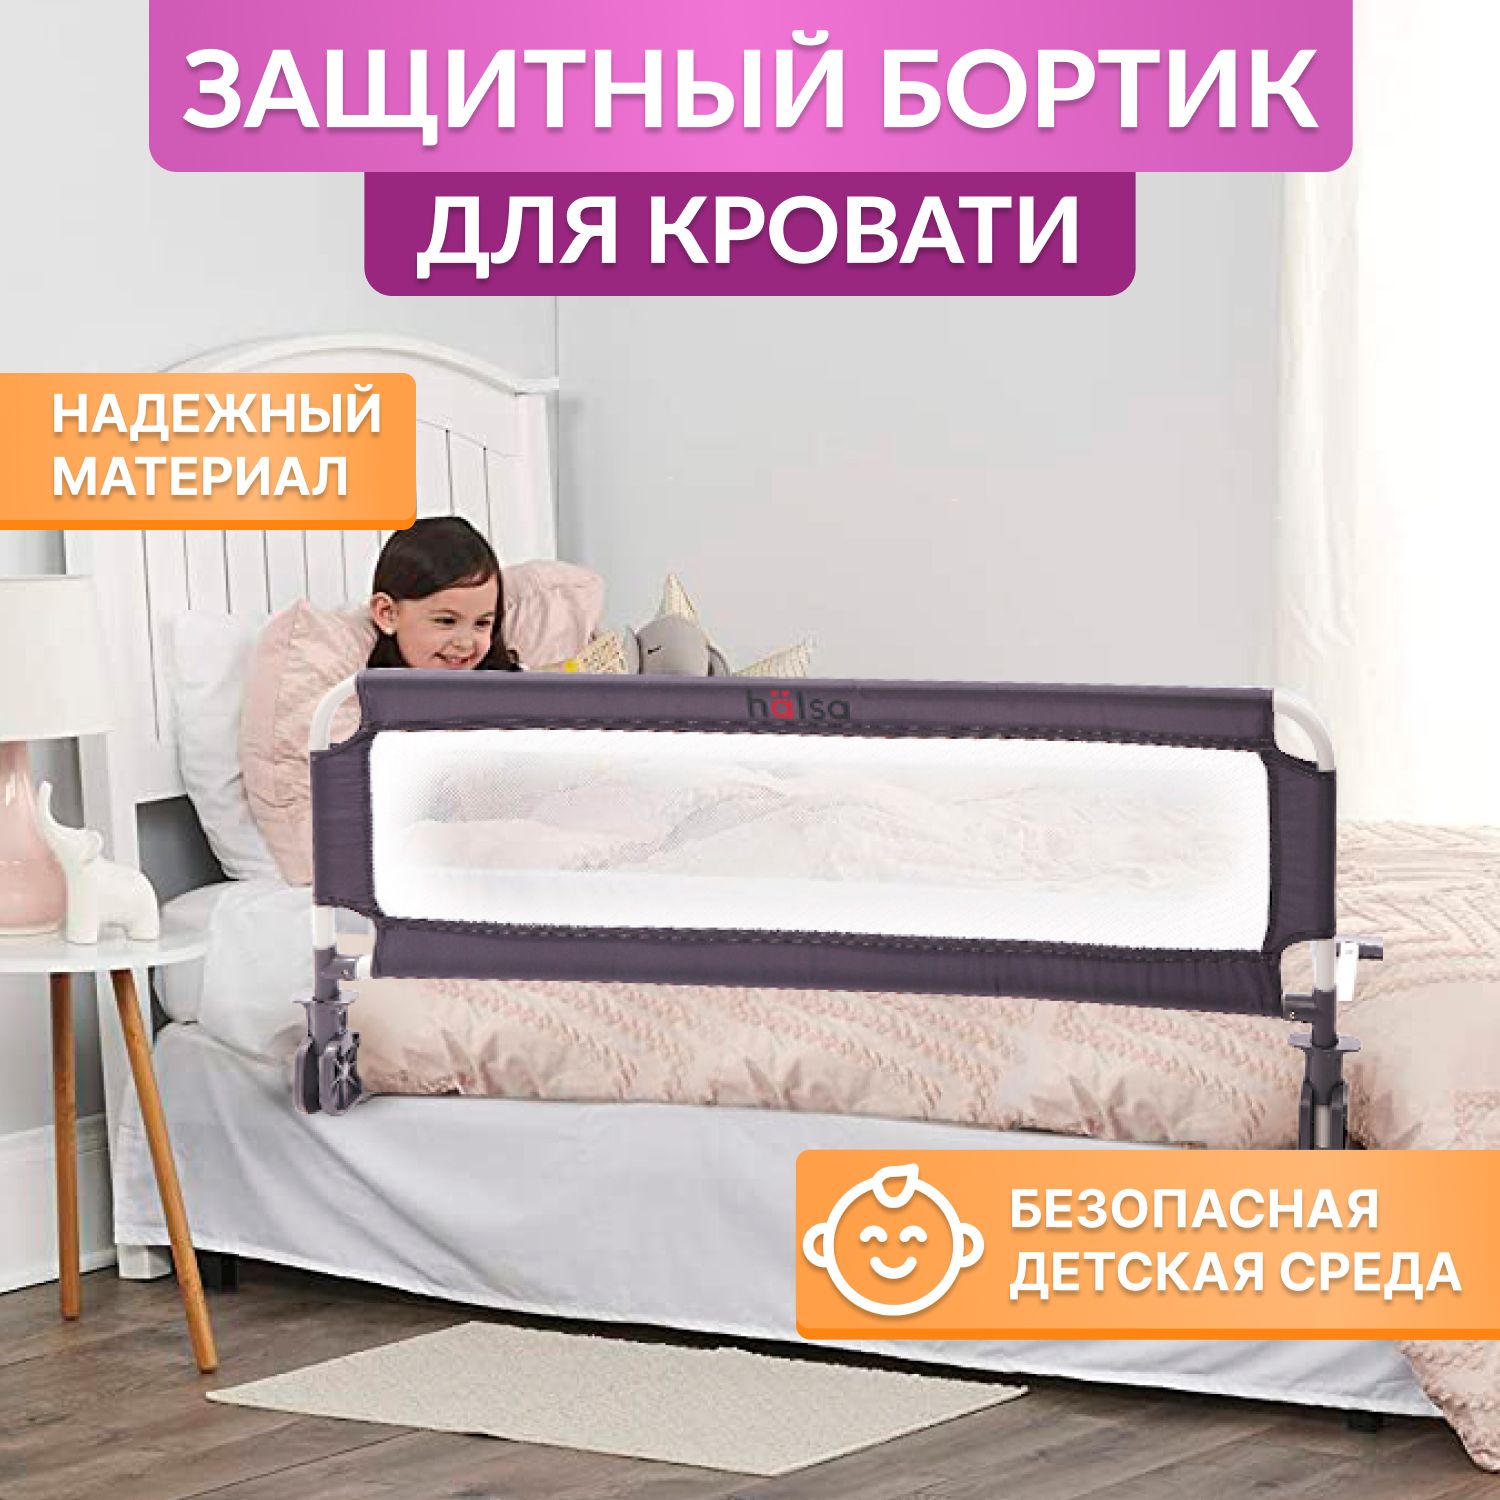 Бортики для кровати - можно купить в Киеве, Украине - vse-v-dim | Vs